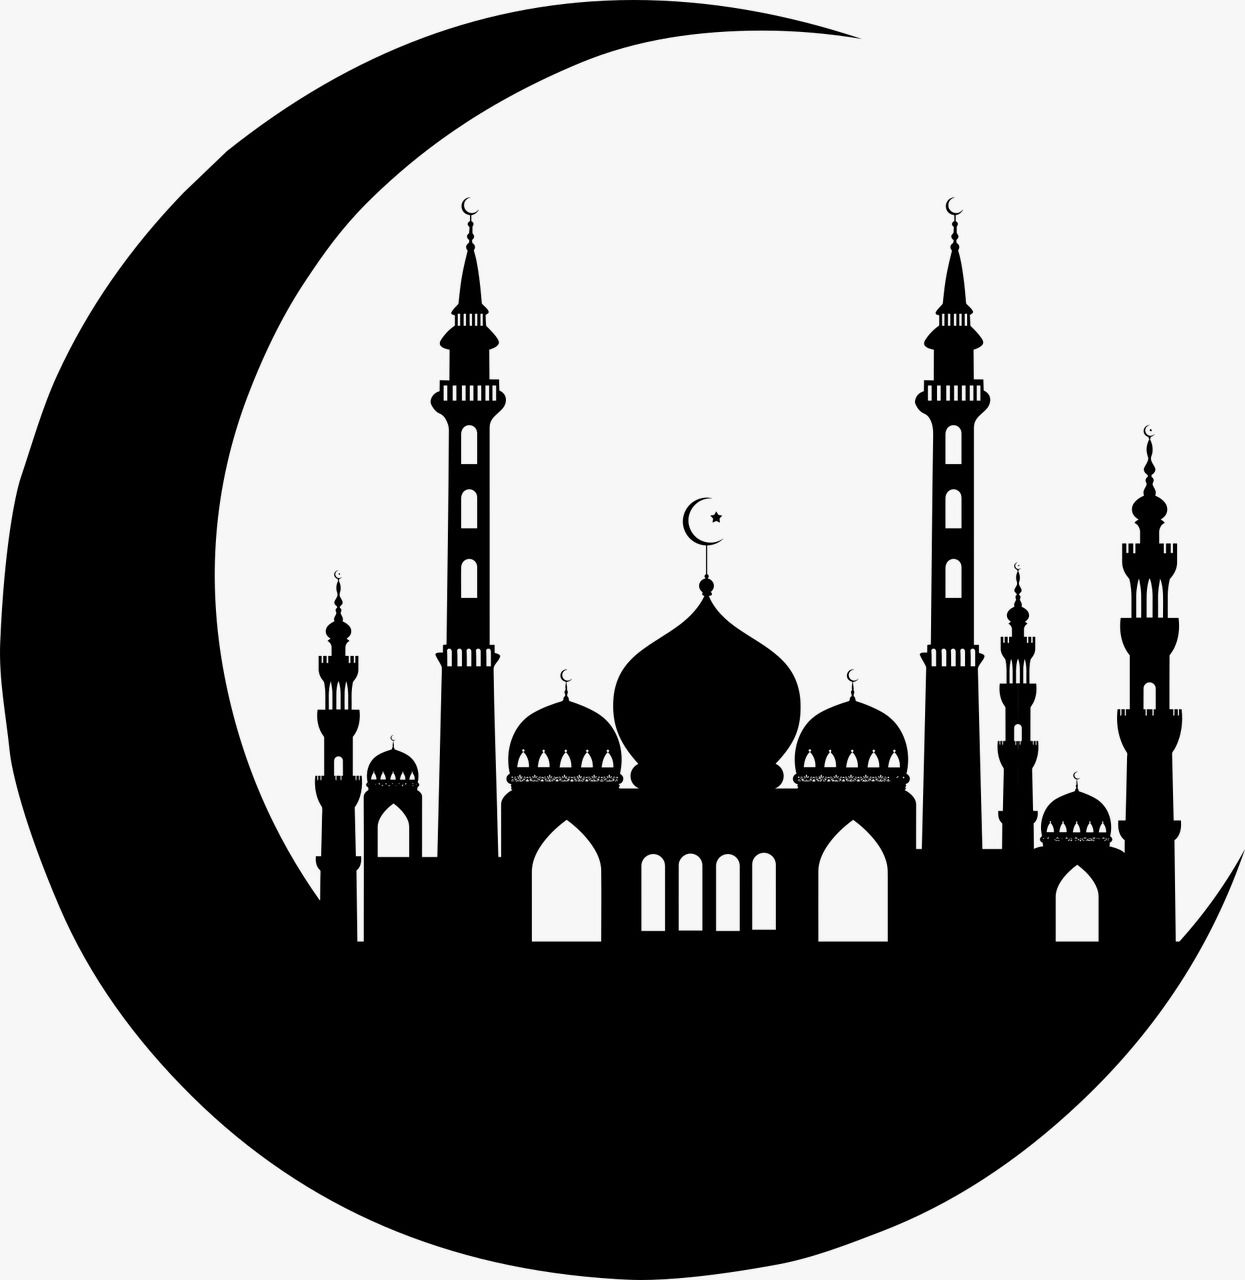 Contoh Ceramah Menjelang Ramadhan 2021 Dengan Tema Hal Hal Yang Dipersiapkan Menyambut Bulan Suci 1442 H Metro Lampung News